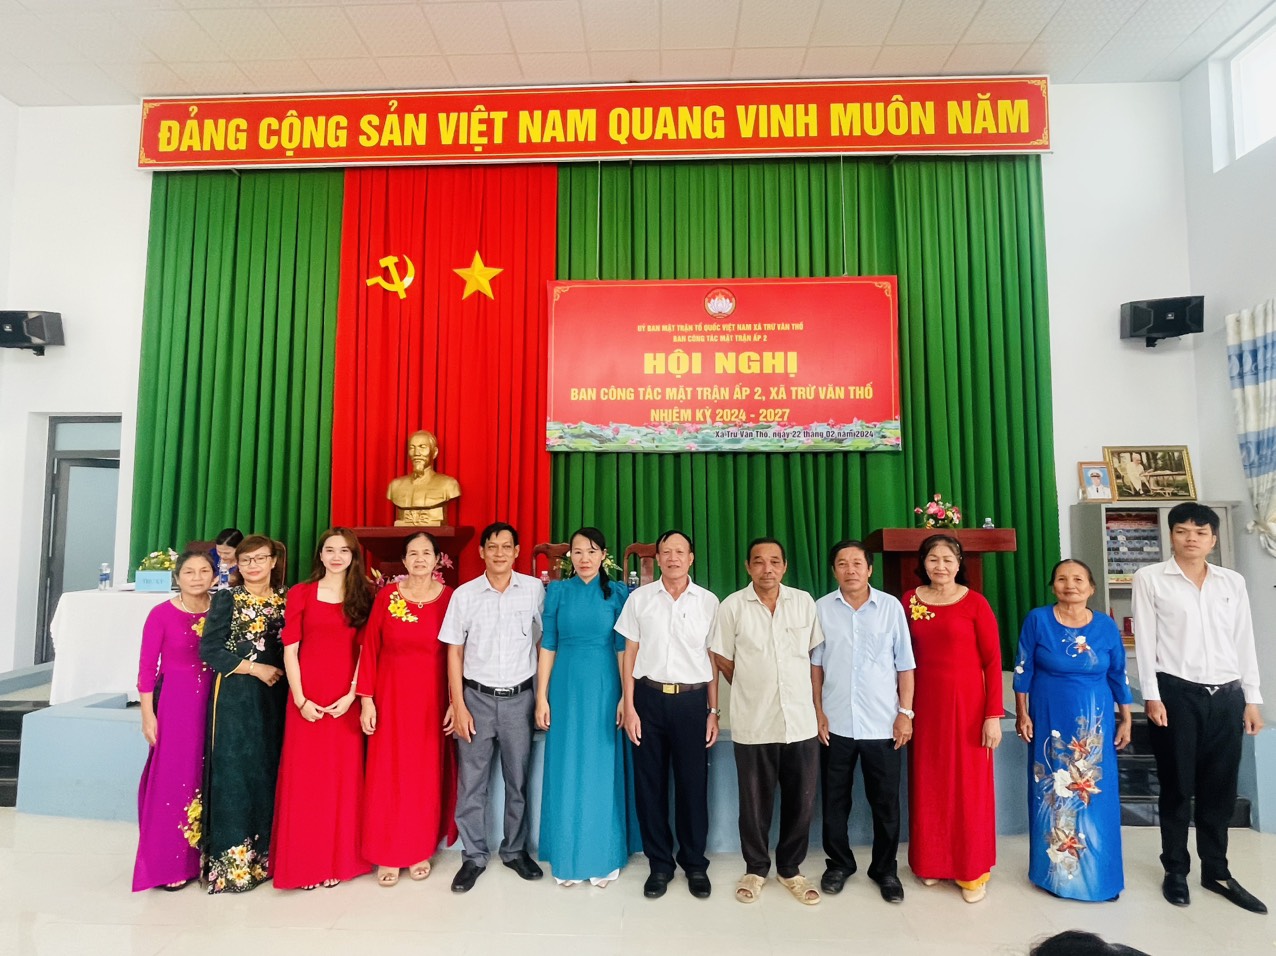 Uỷ ban Mặt trận Tổ Quốc Việt Nam xã Trừ Văn Thố tổ chức điểm Hội nghị Ban công tác Mặt trận ấp 2 nhiệm kỳ 2024 – 2027.